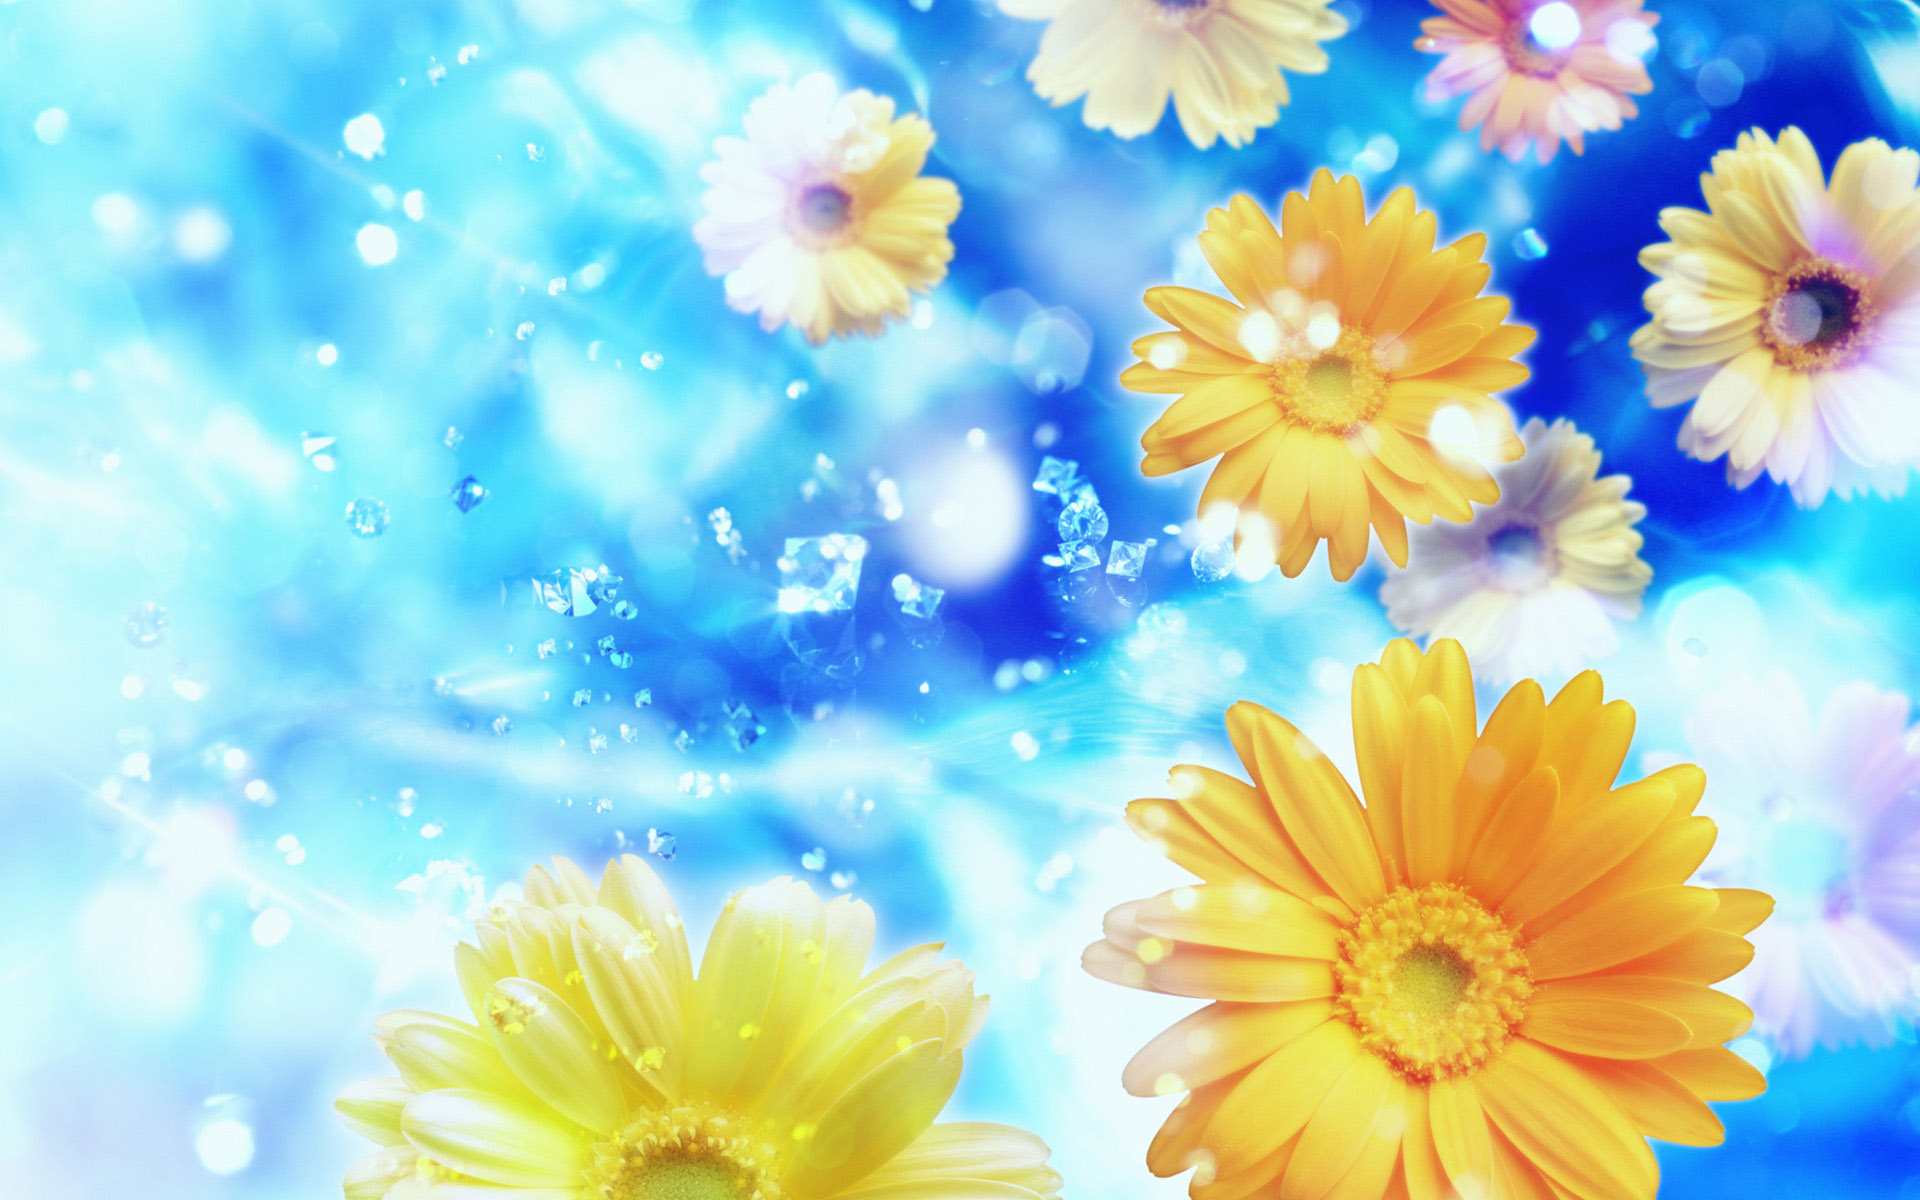 Desktop Background Puters Windows Gerber Daisies Flowers